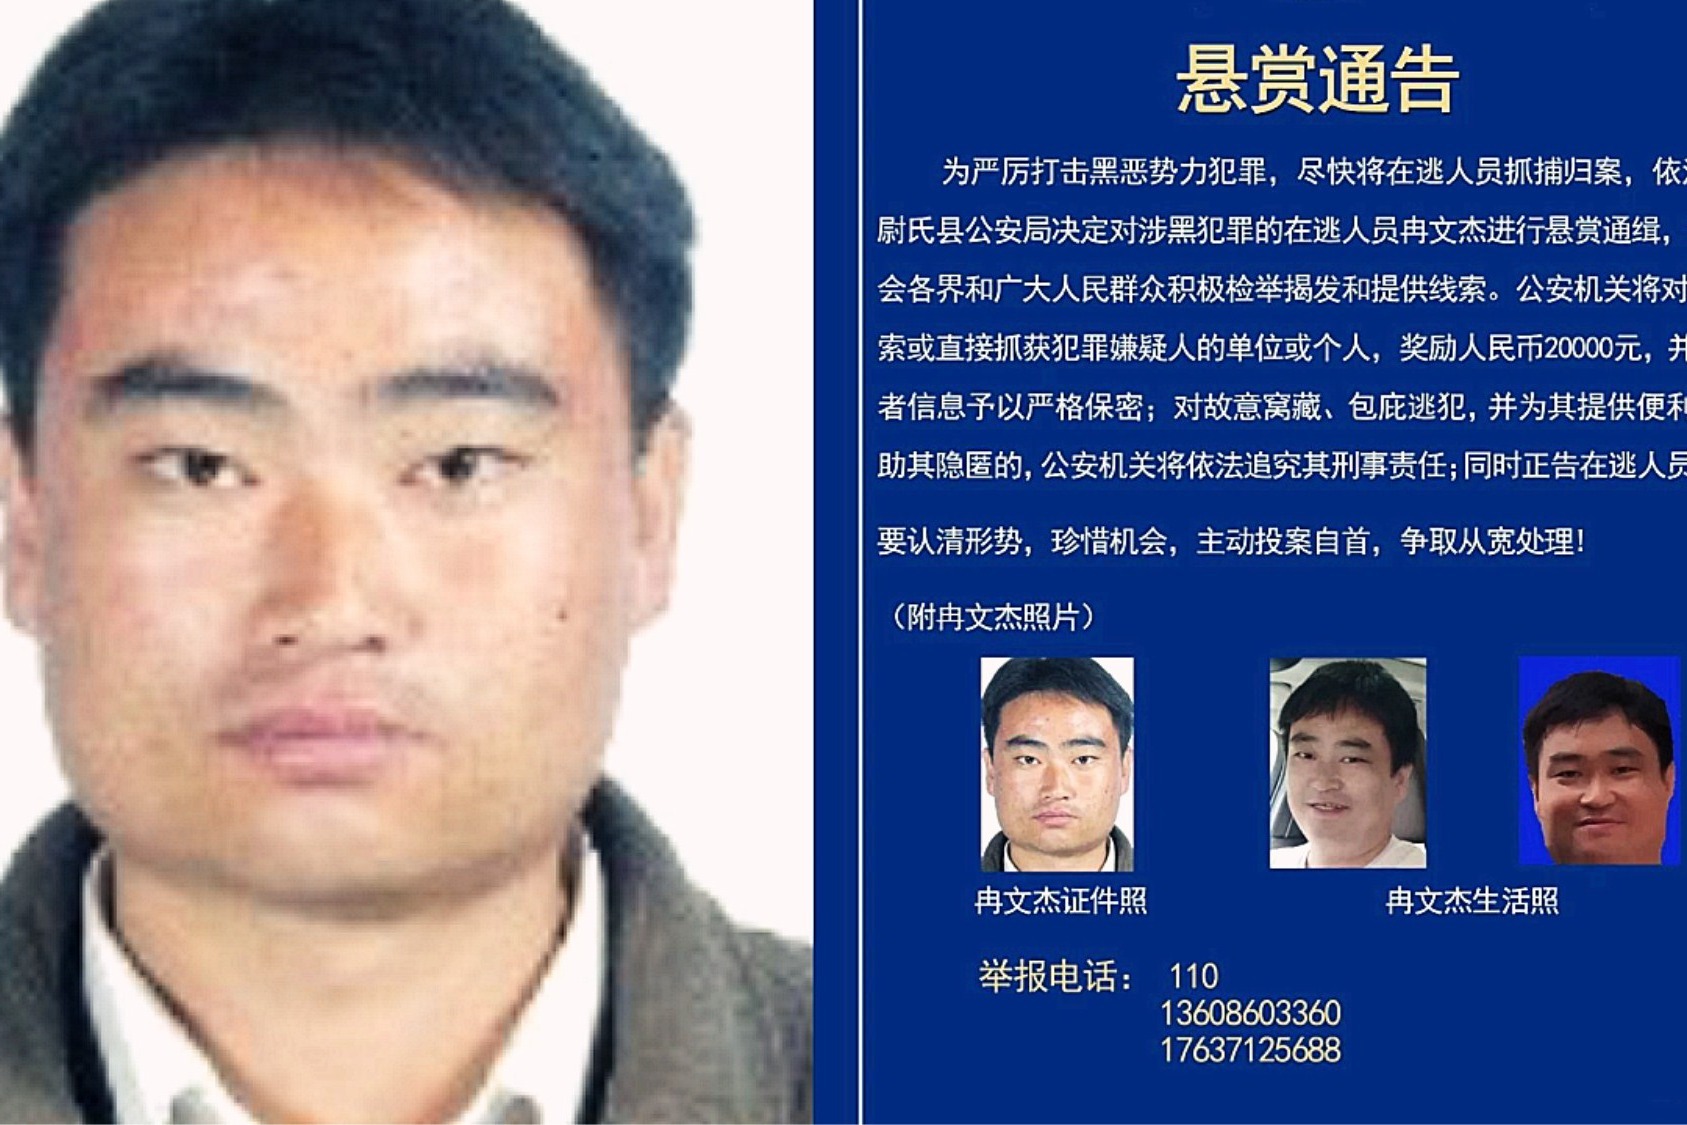 河南警方发布通缉令悬赏追逃涉黑在逃人员嫌犯照片公布